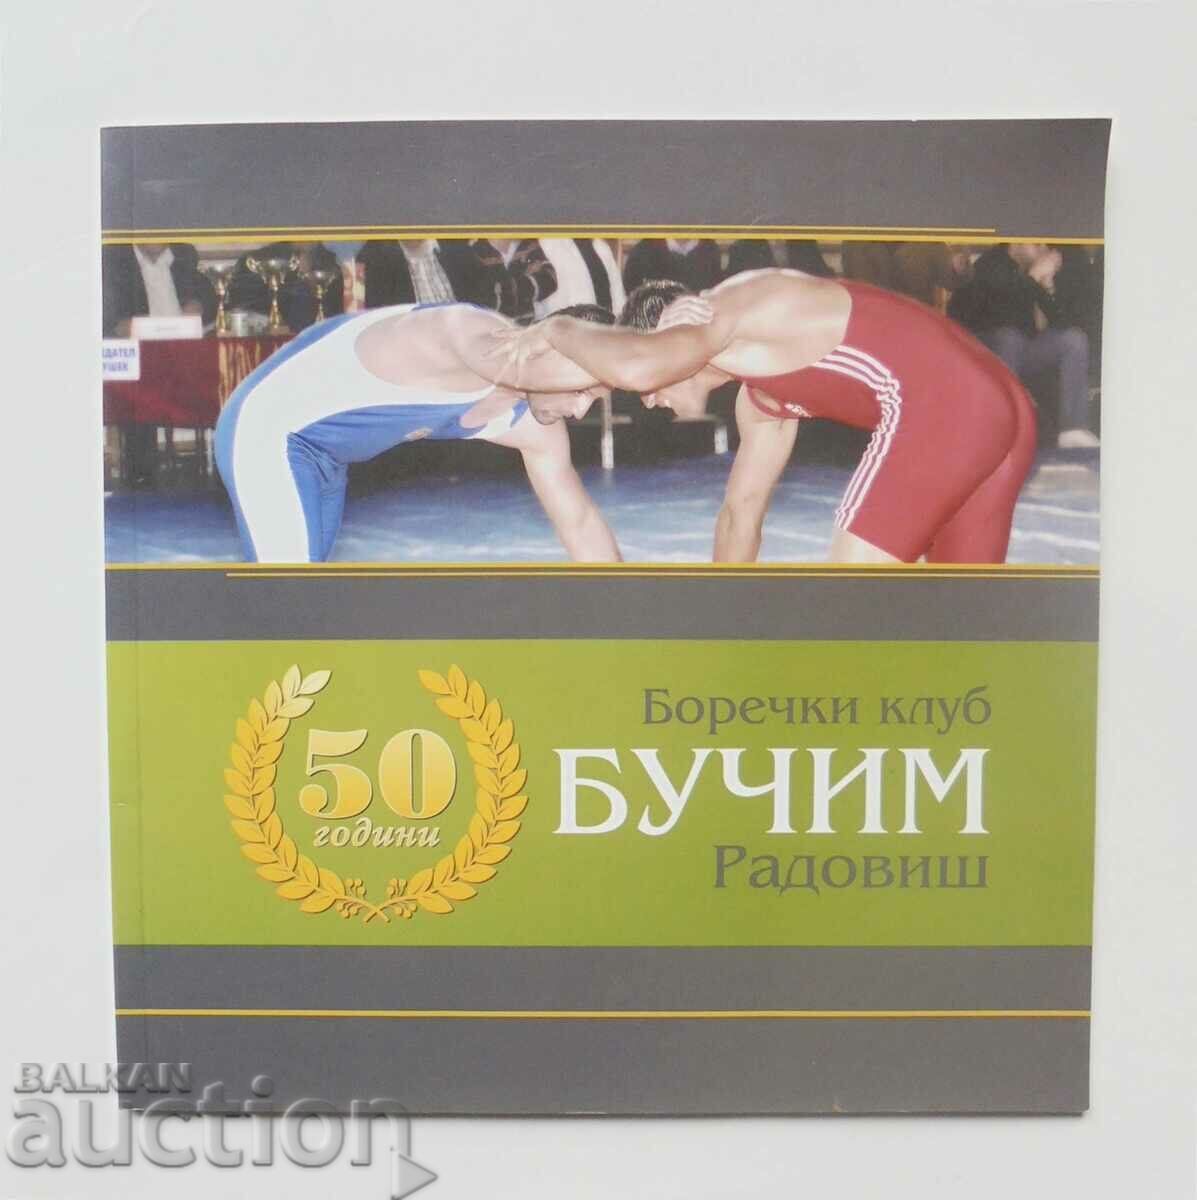 50 χρόνια πάλης "Buchim" - Radovish 2012